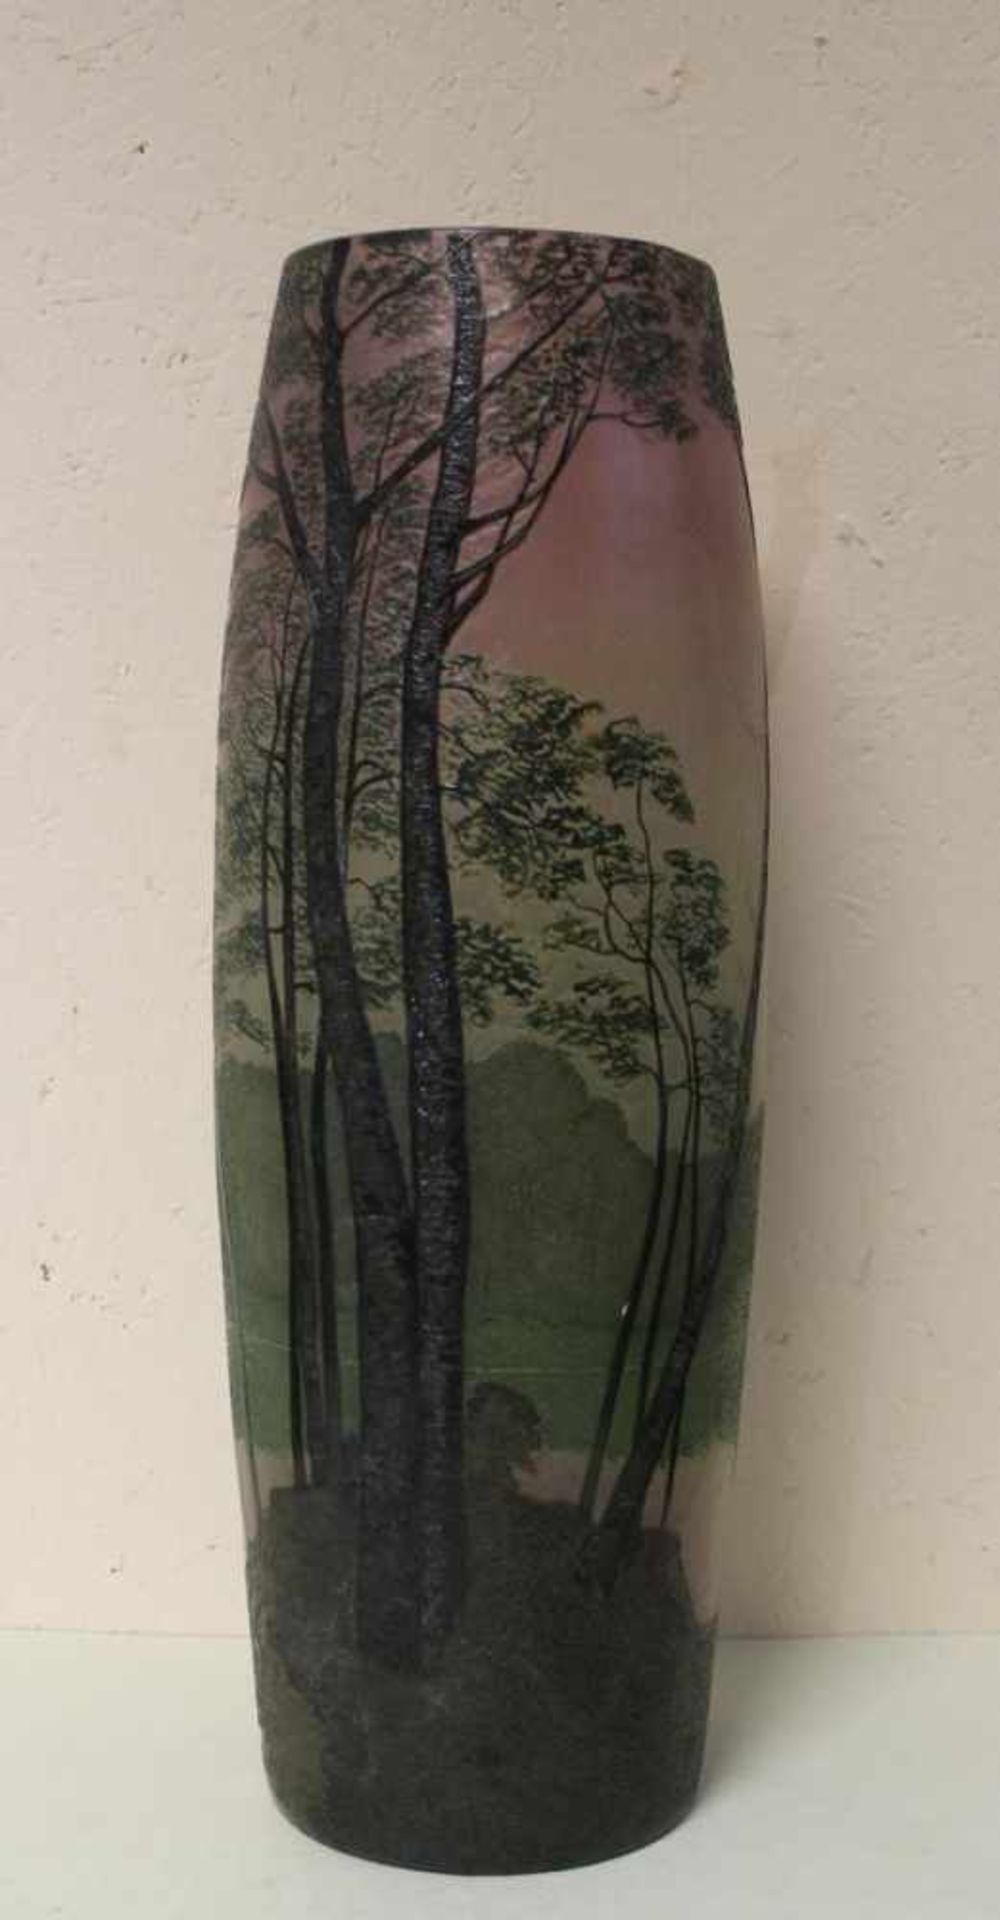 Imposante Vase Legras geätzt und emailliert  ca. 40 cm Landschaftsdarstellung signiert.027/132